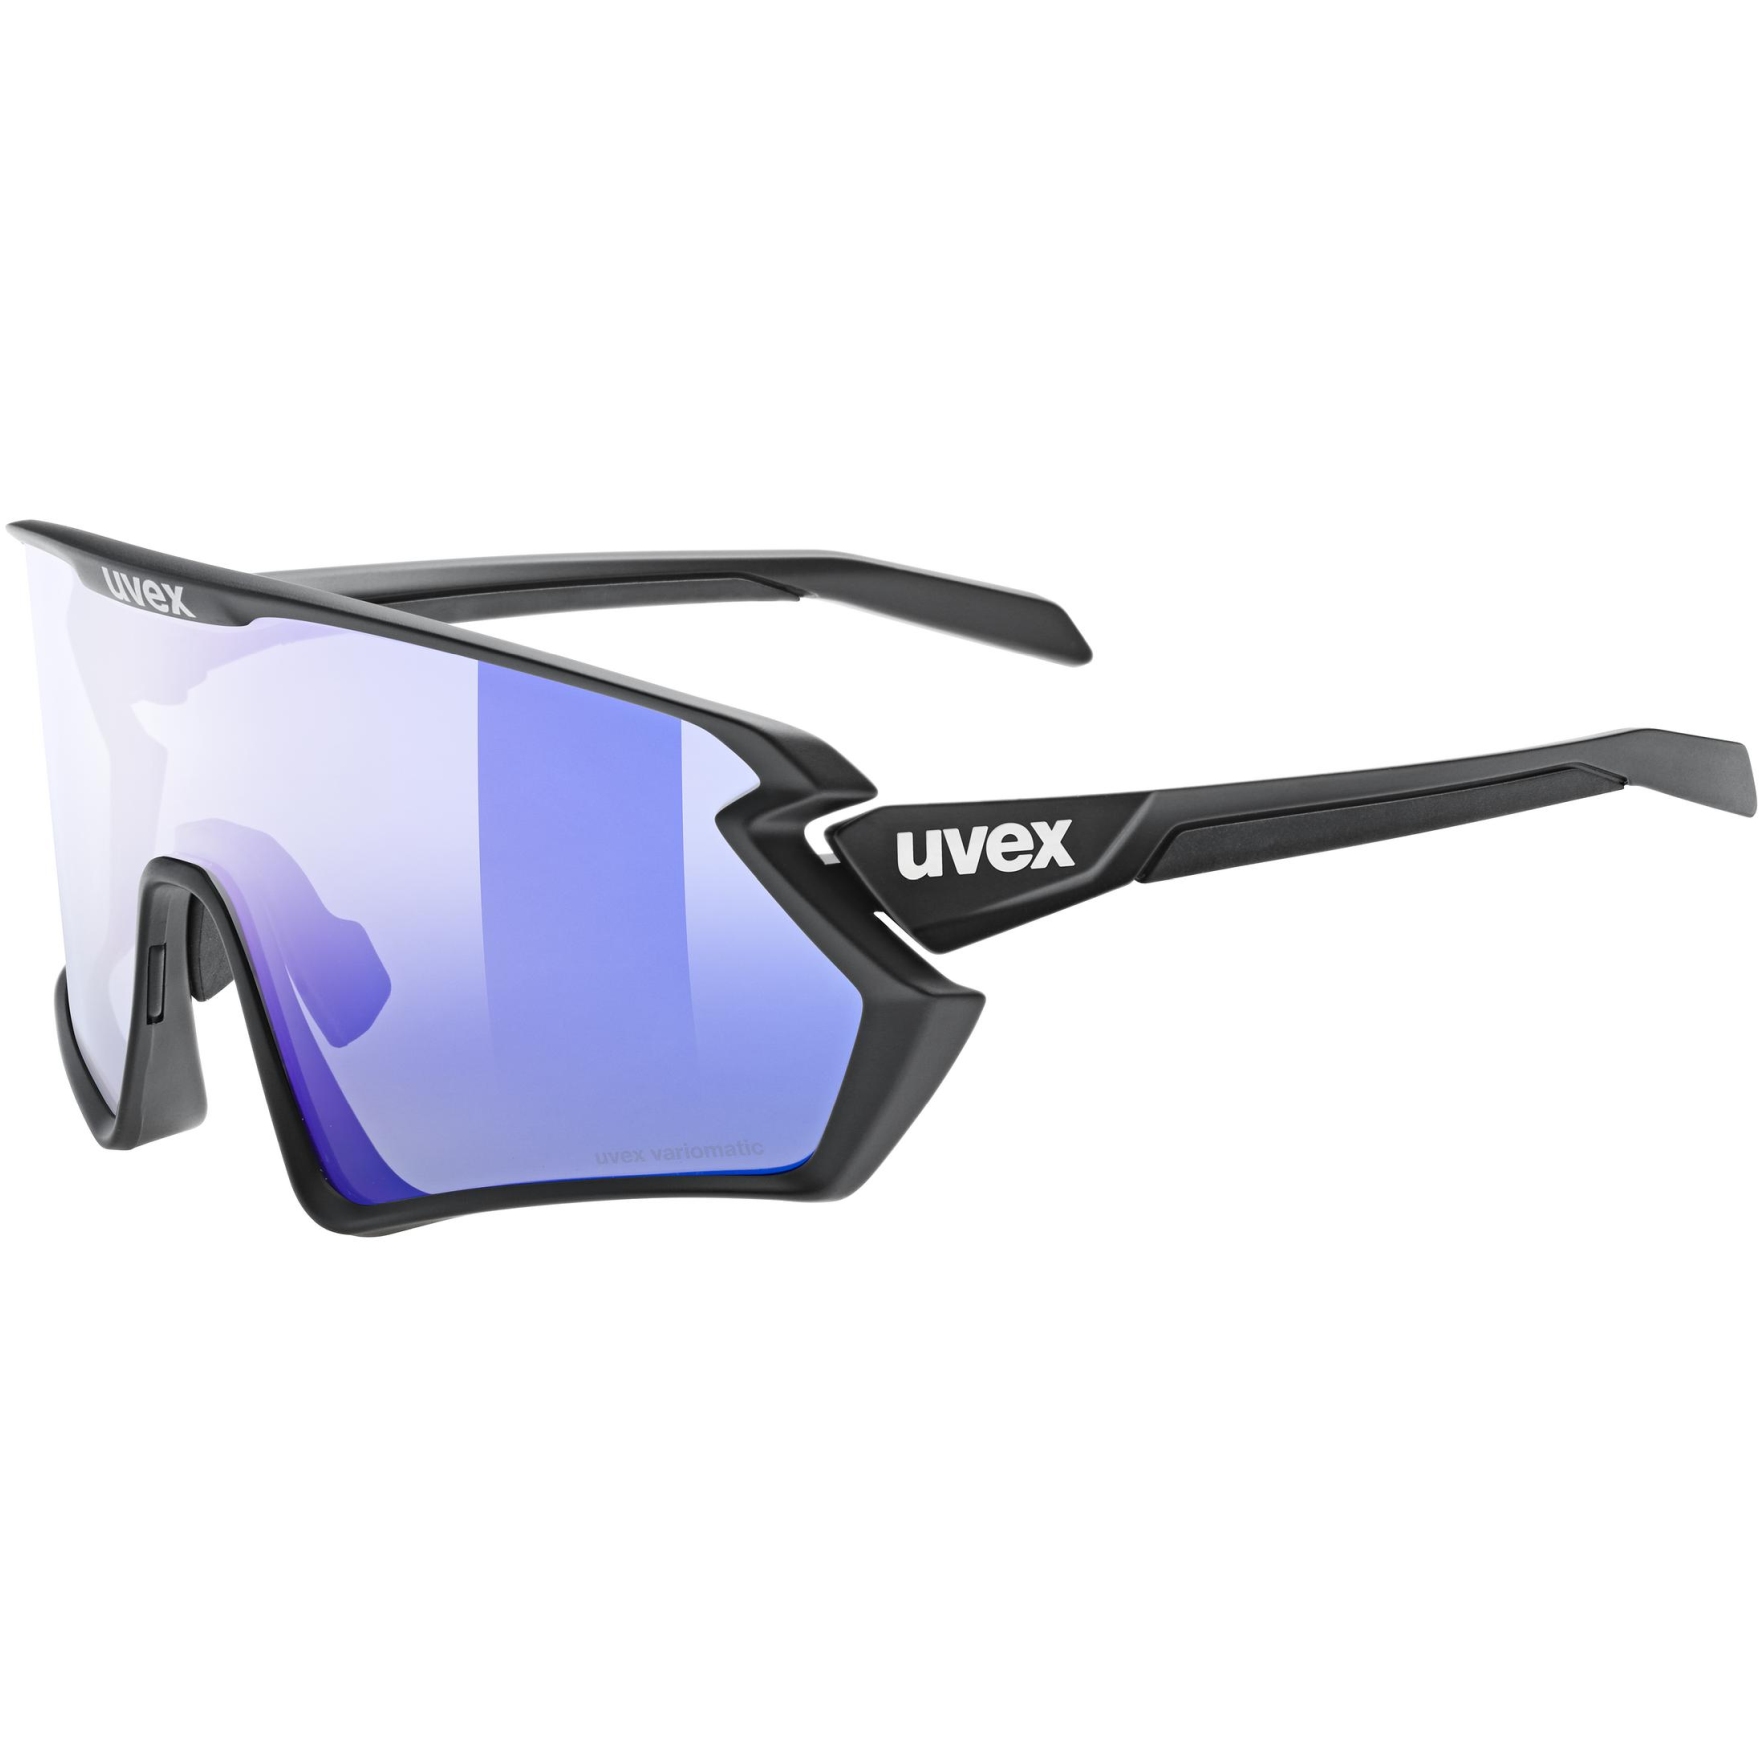 Productfoto van Uvex sportstyle 231 2.0 V Bril - black matt/variomatic litemirror blue